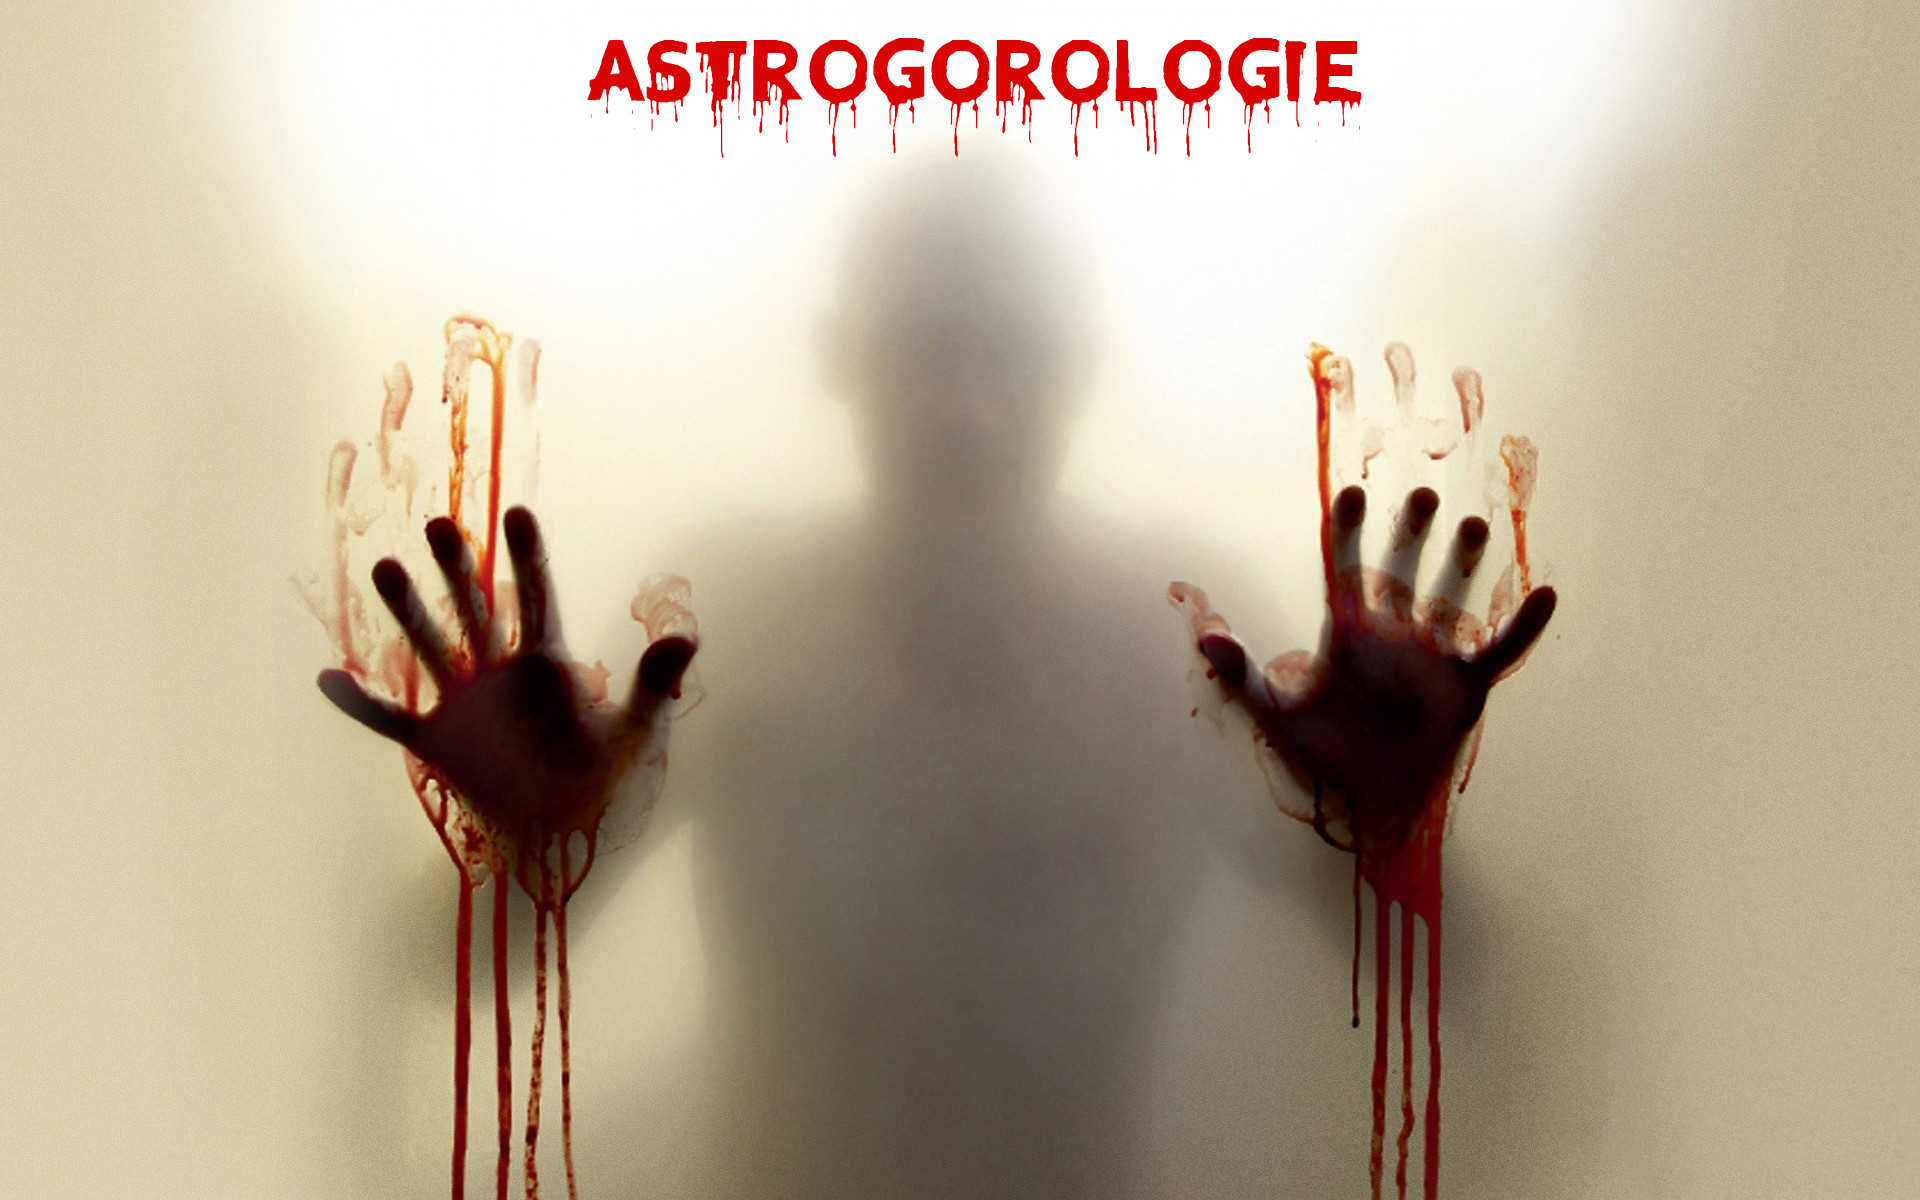 Astrogorologie